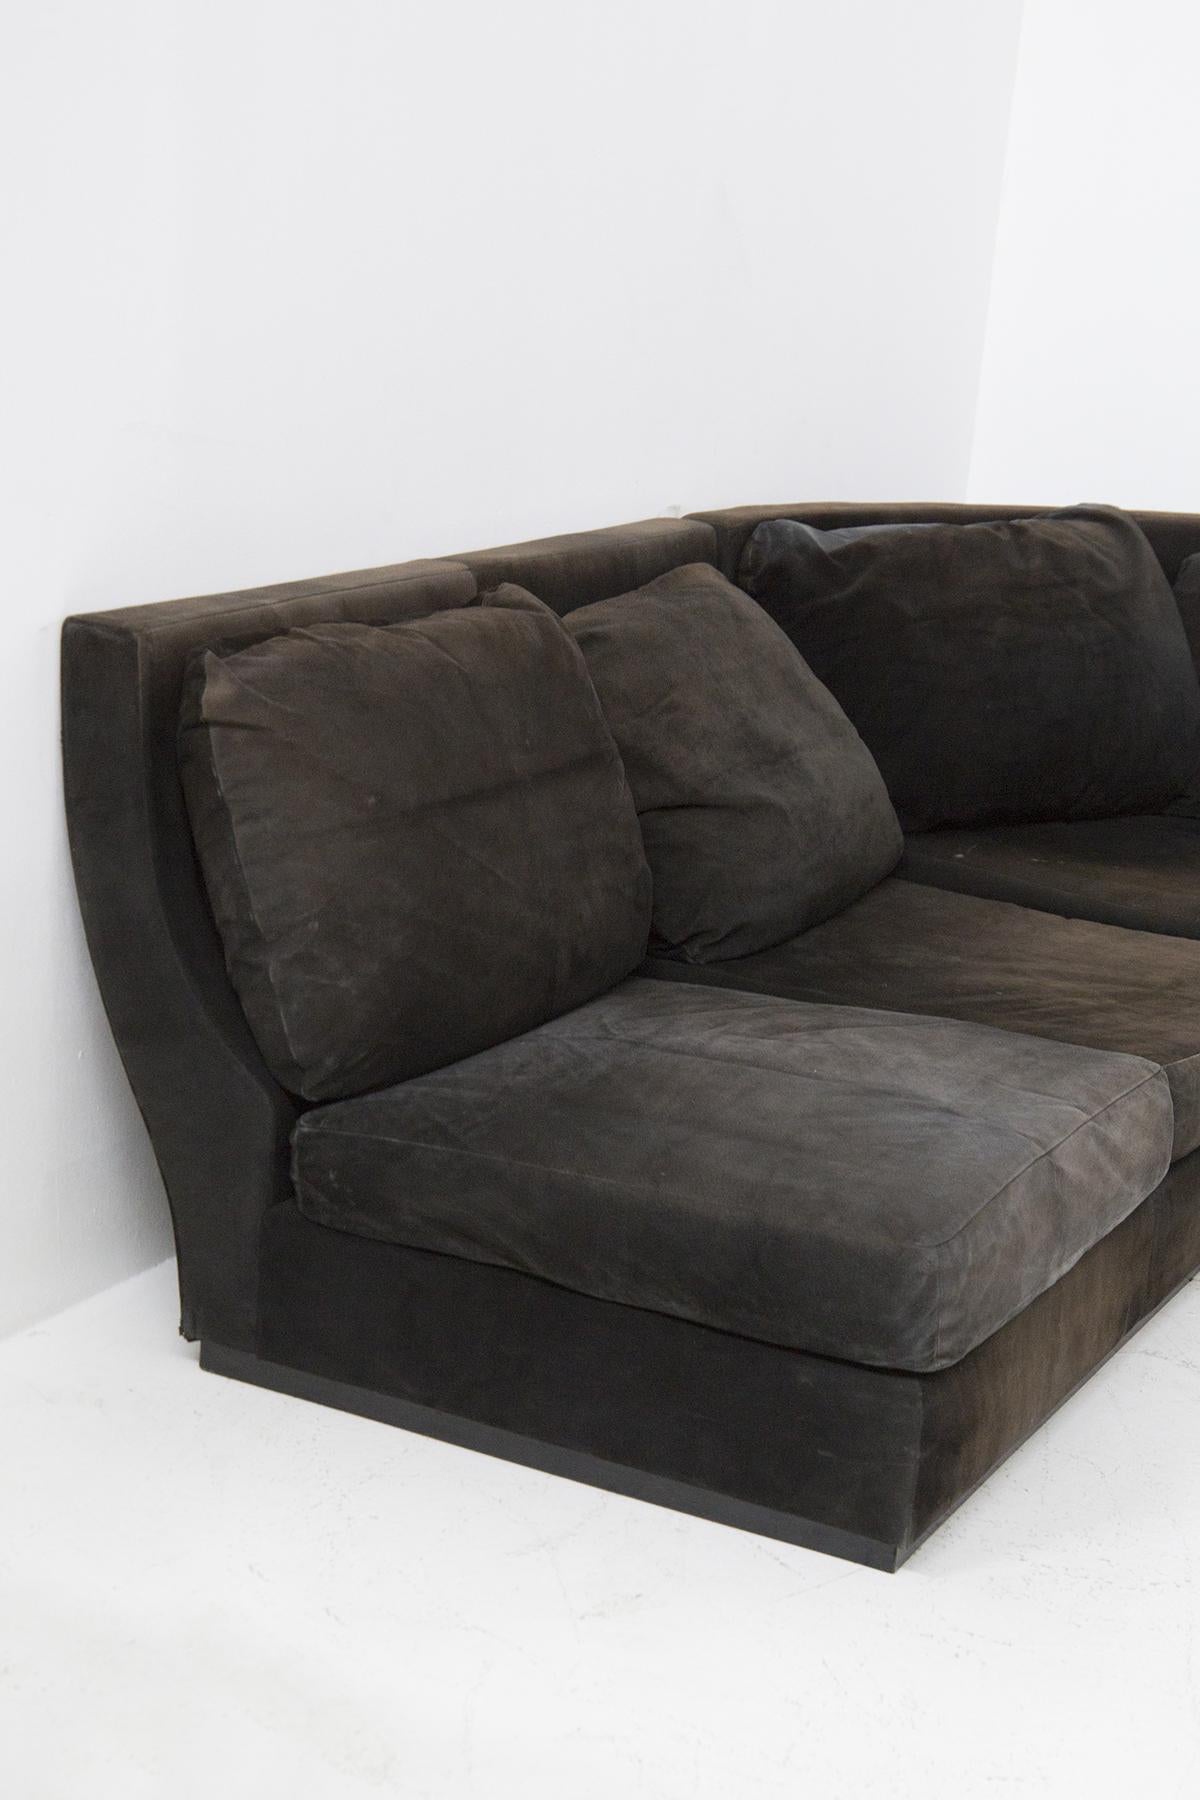 Magnifique canapé d'angle conçu dans les années 1970, de belle facture italienne.
Le canapé est anguleux comme vous pouvez le voir et est entièrement constitué d'alcantara noir. Il y a 7 coussins d'assise et 7 coussins de dossier. La base est assez